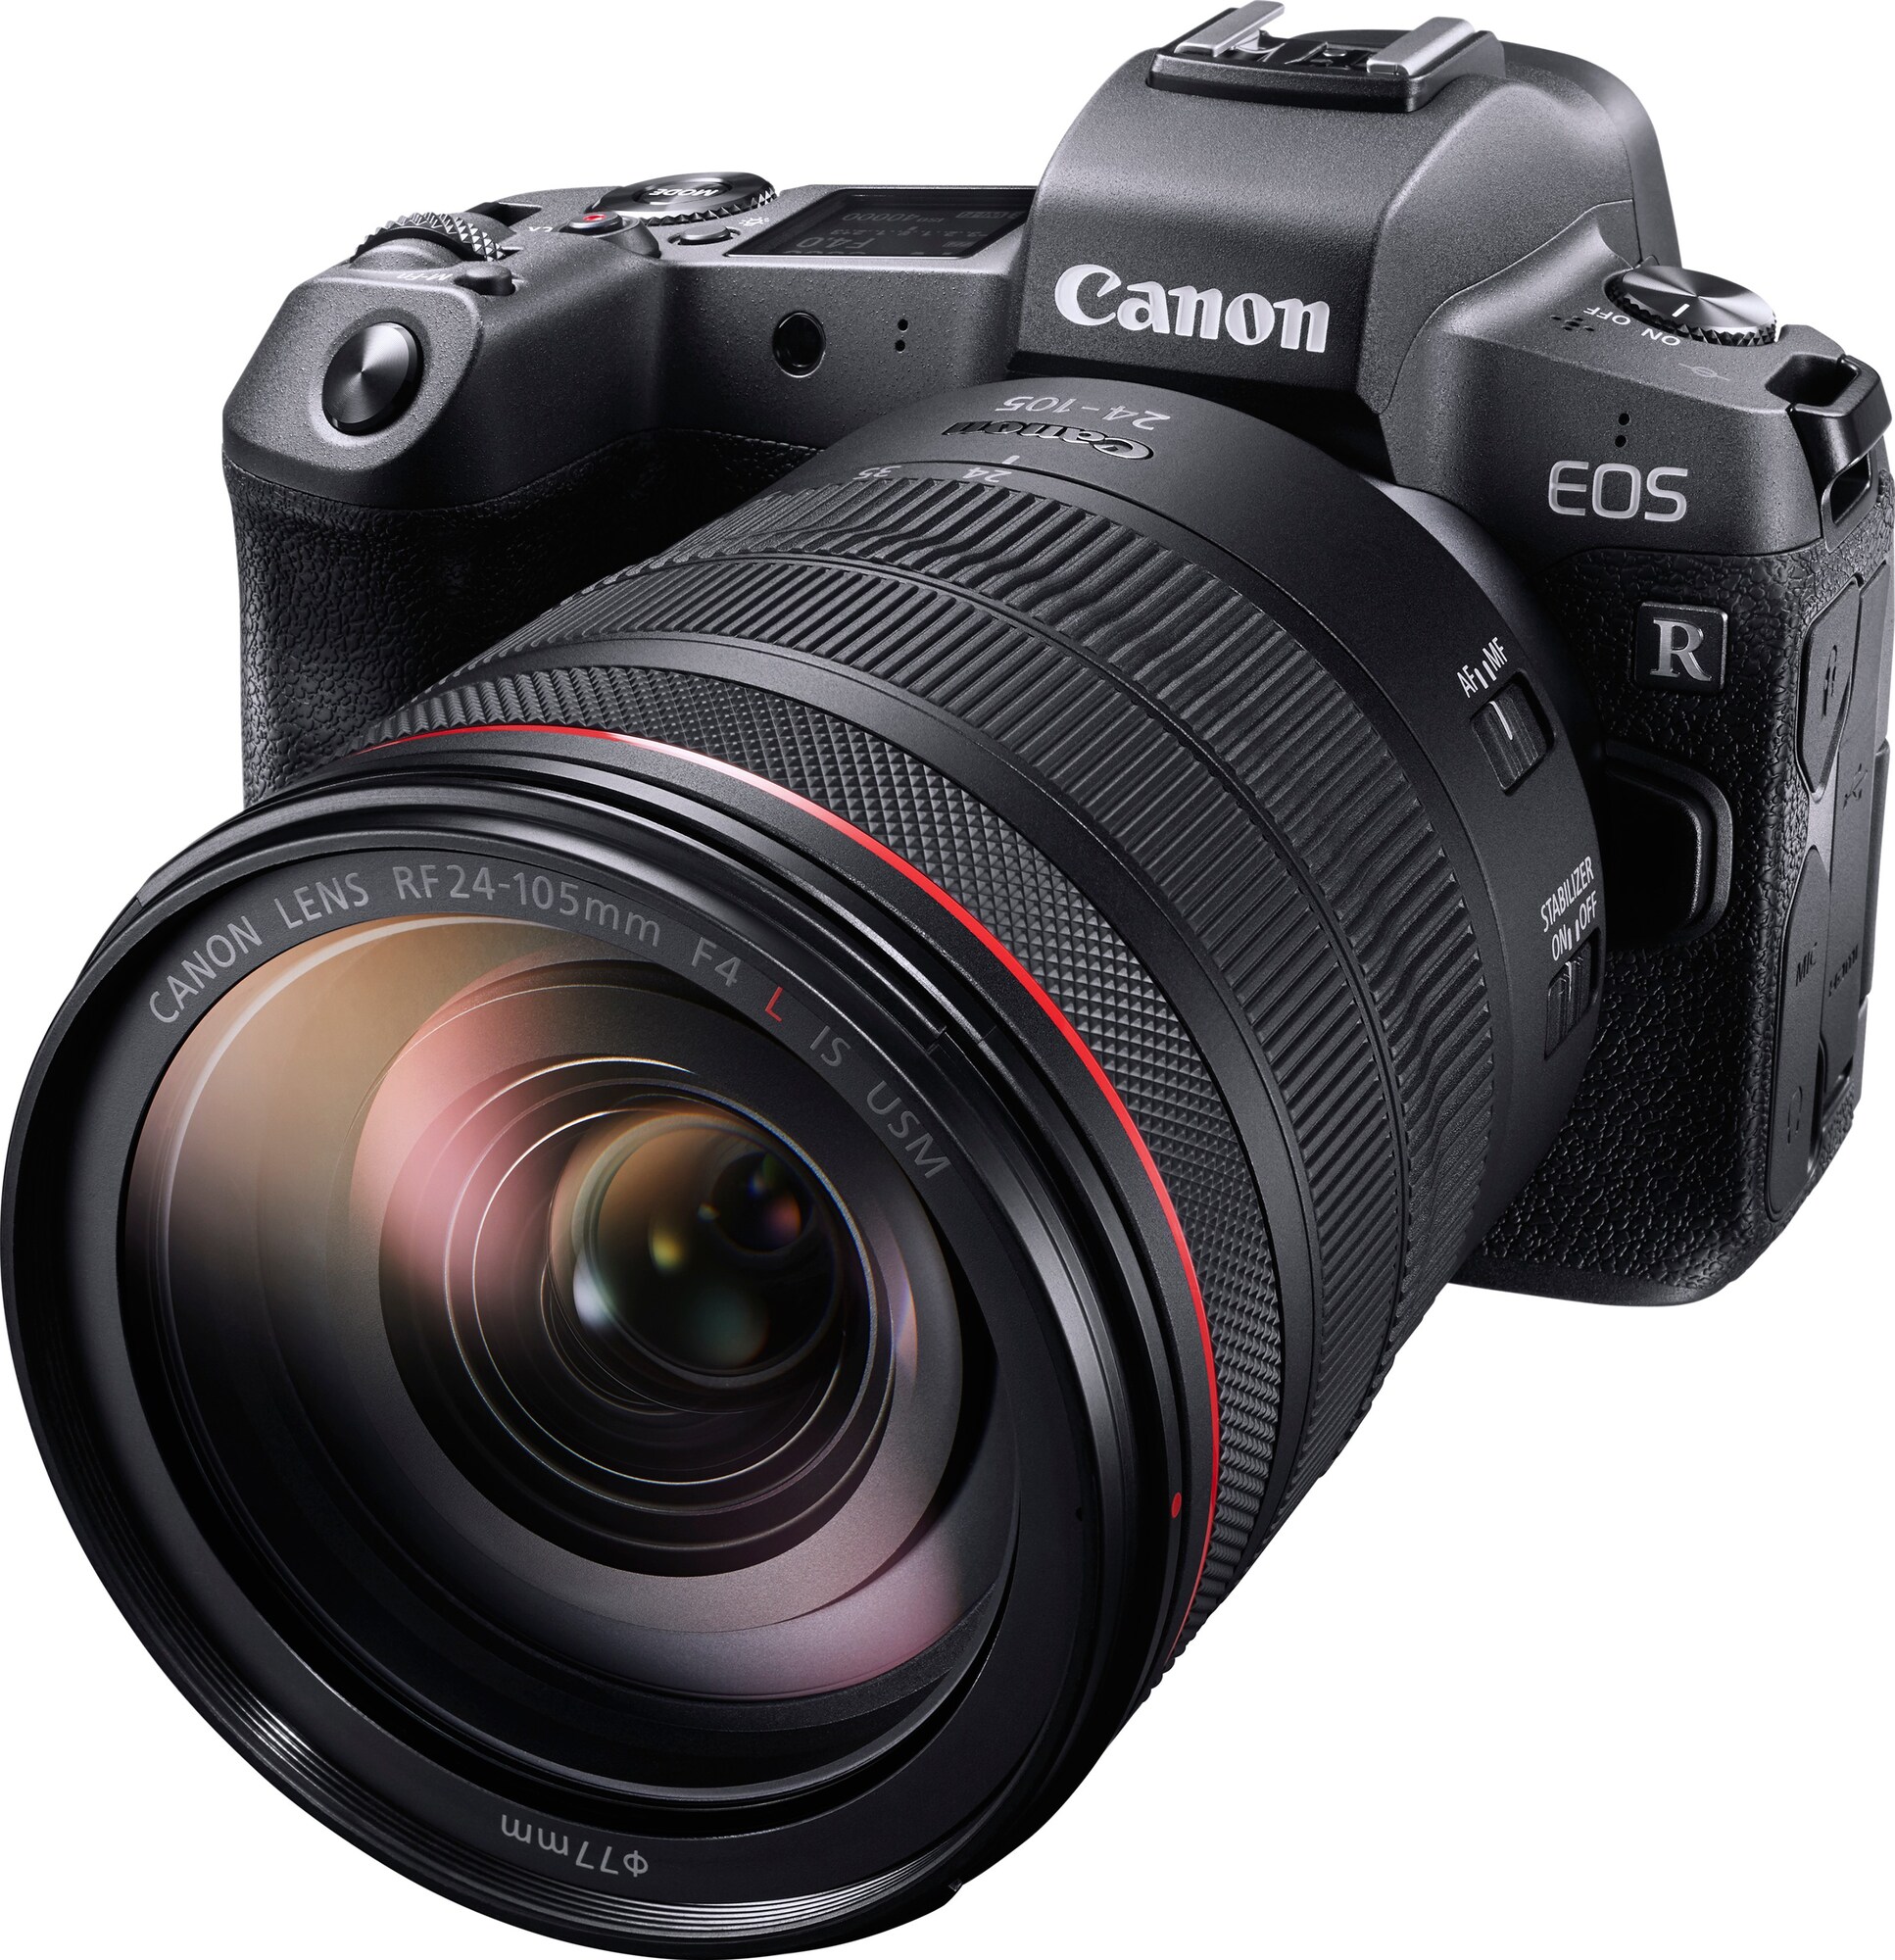 Canon EOS R peilitön kamera + RF 24-105mm objektiivi - Gigantti verkkokauppa